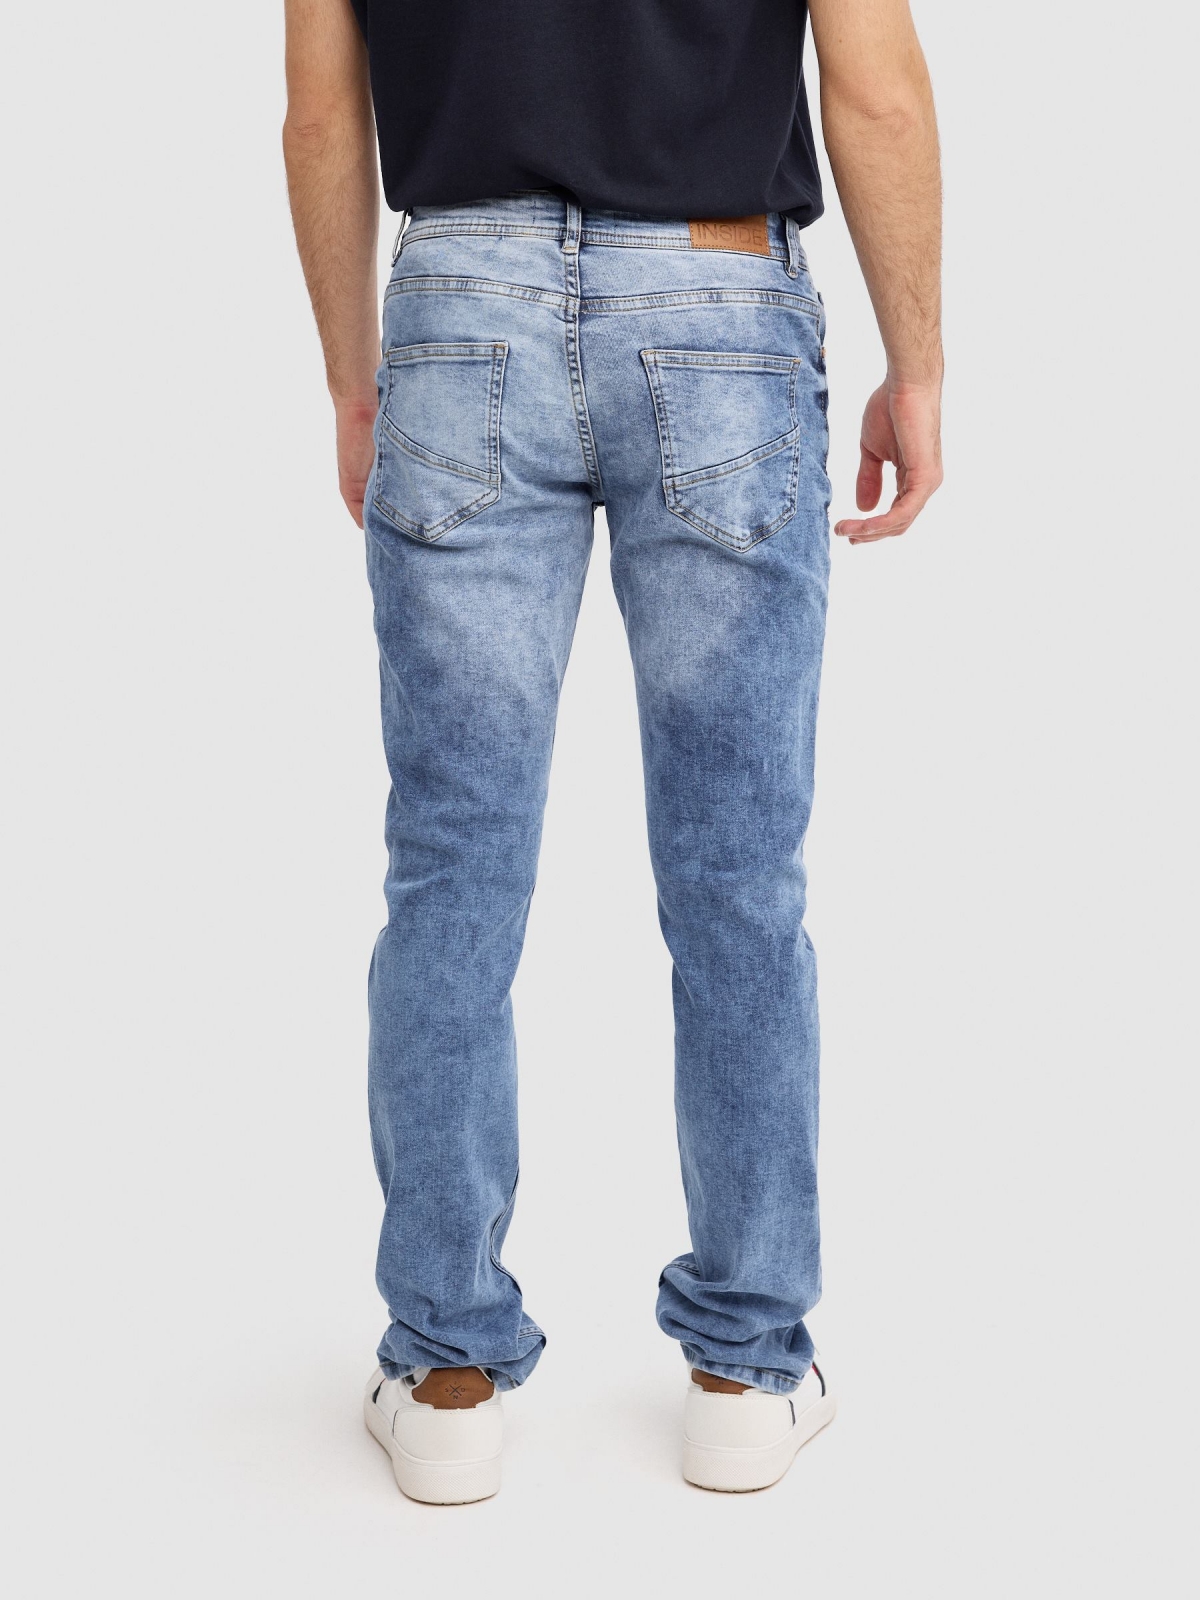 Jeans regular lavado azul vista media trasera